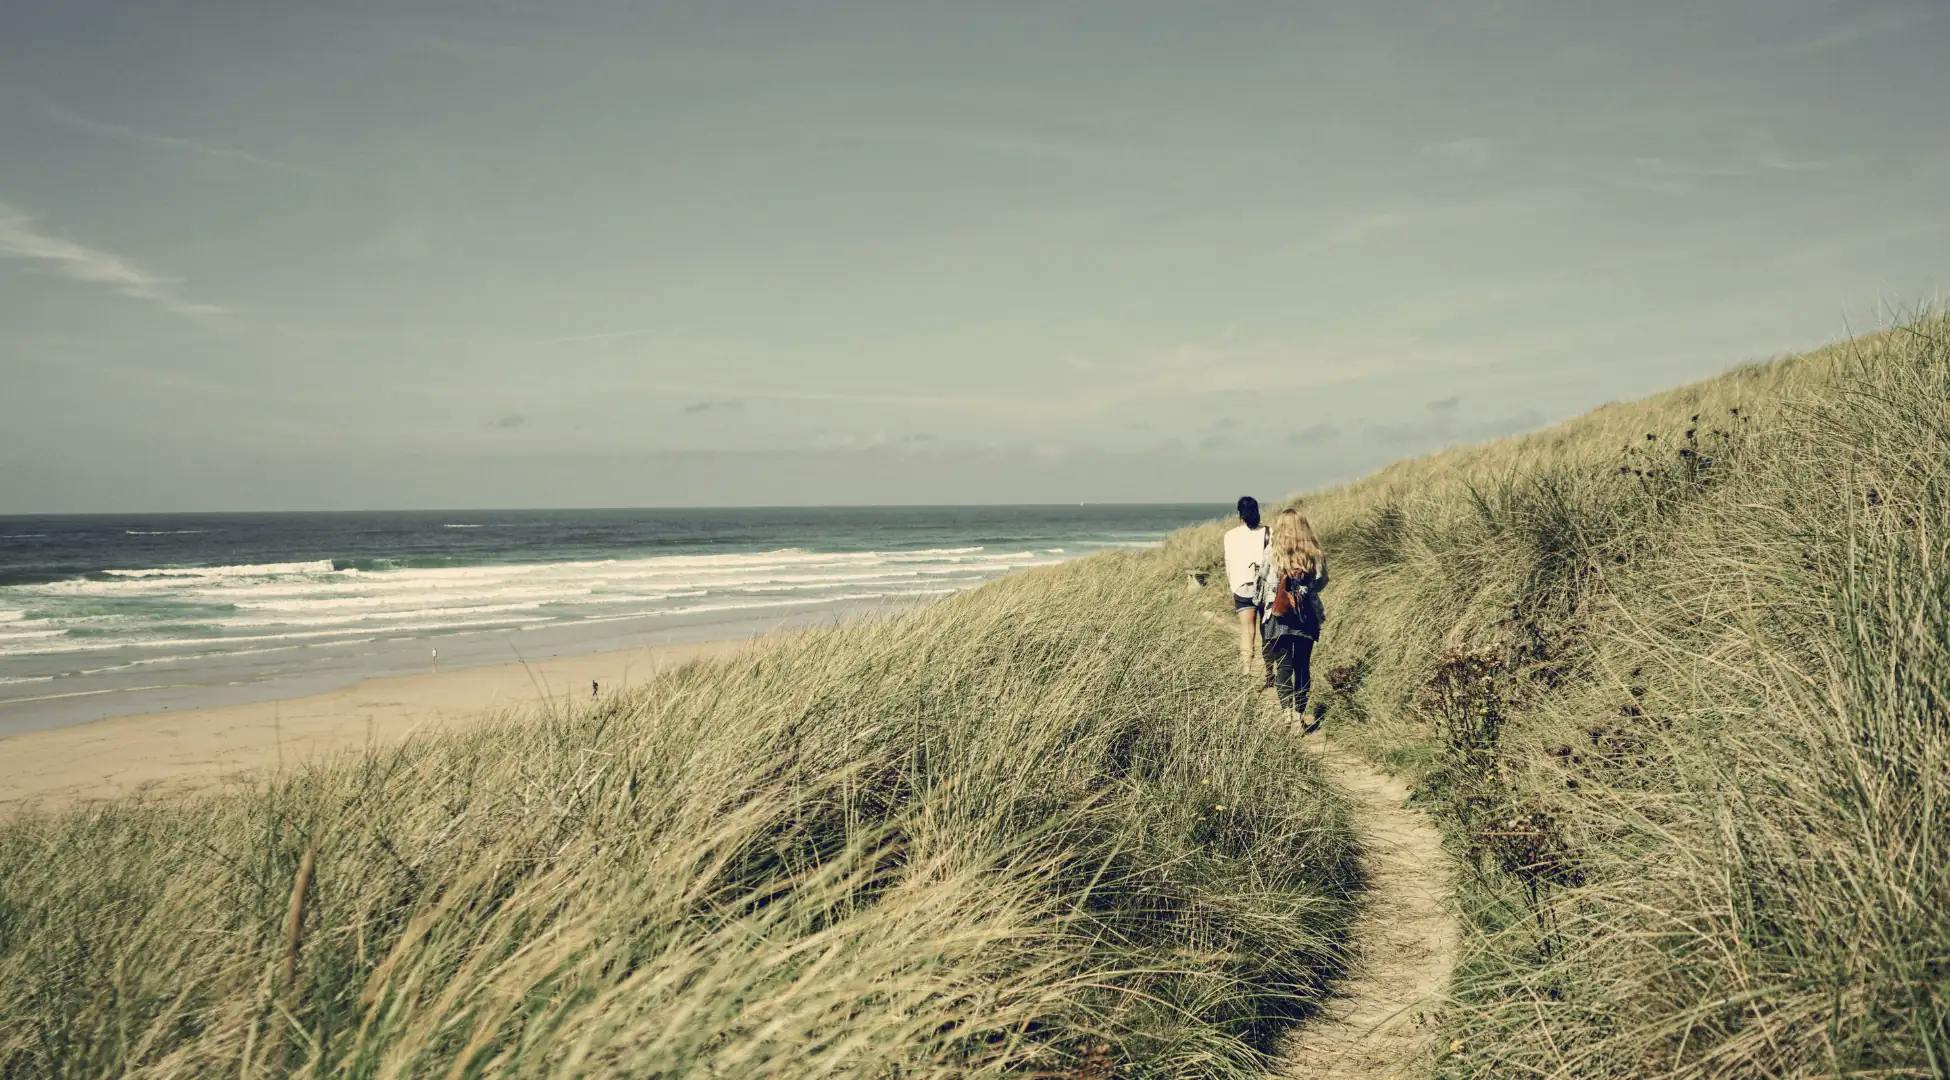 Promenade tranquille dans les dunes, une des activités relaxantes proposées par Pop'in.